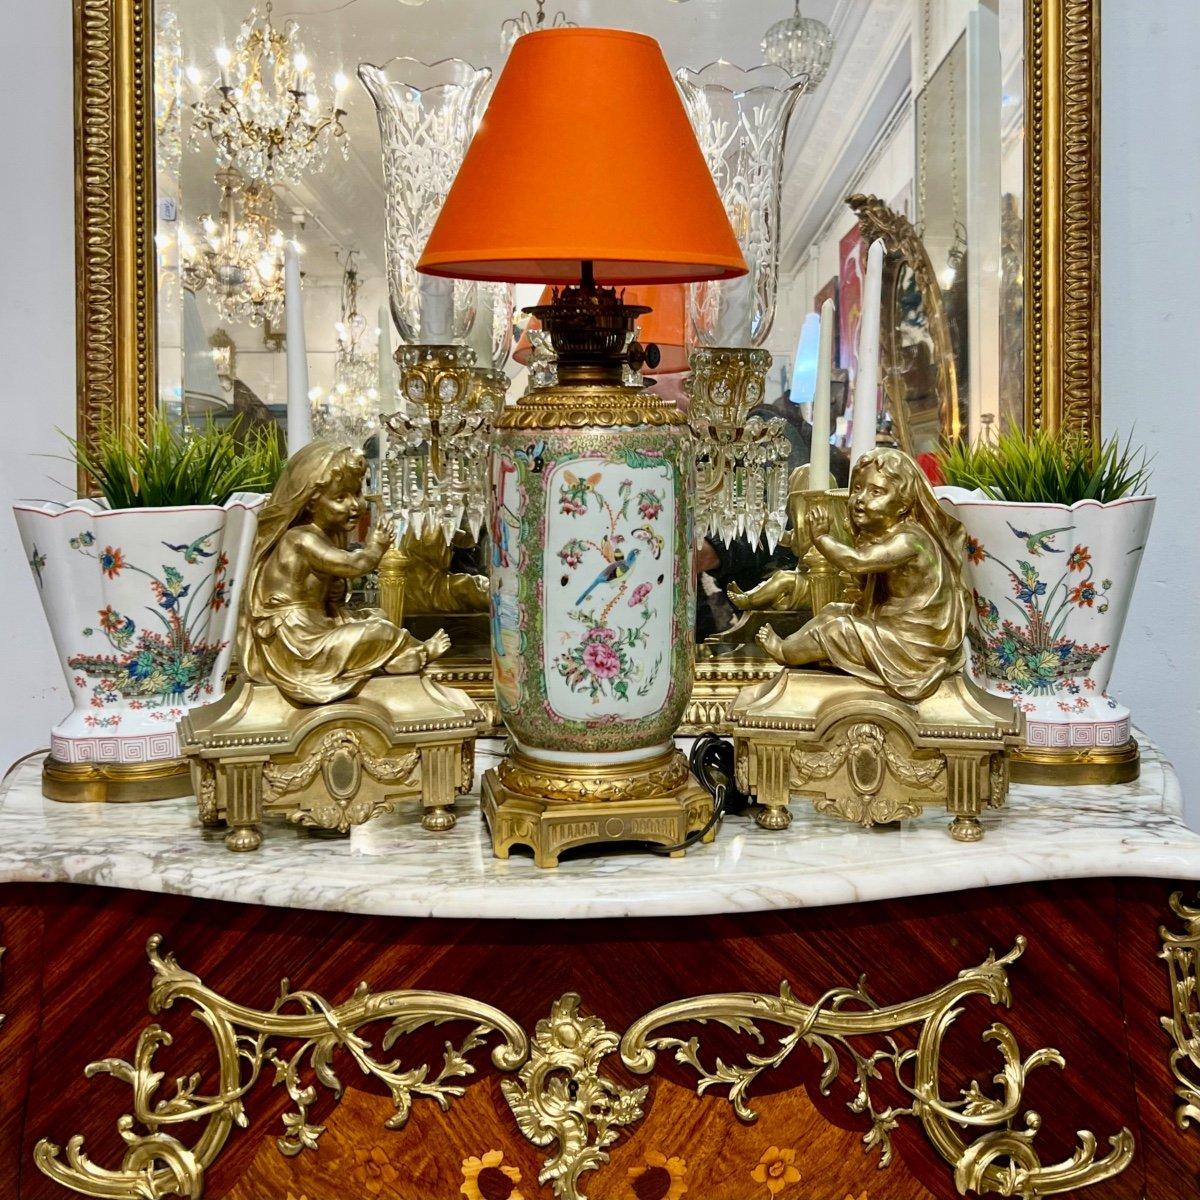 Wir präsentieren Ihnen diese beeindruckend große kantonesische Porzellanlampe in zylindrischer Form aus der Zeit Napoleons III. In der Kartusche sind prominente Bilder zu sehen, die Szenen aus dem kaiserlichen chinesischen Palastleben darstellen.